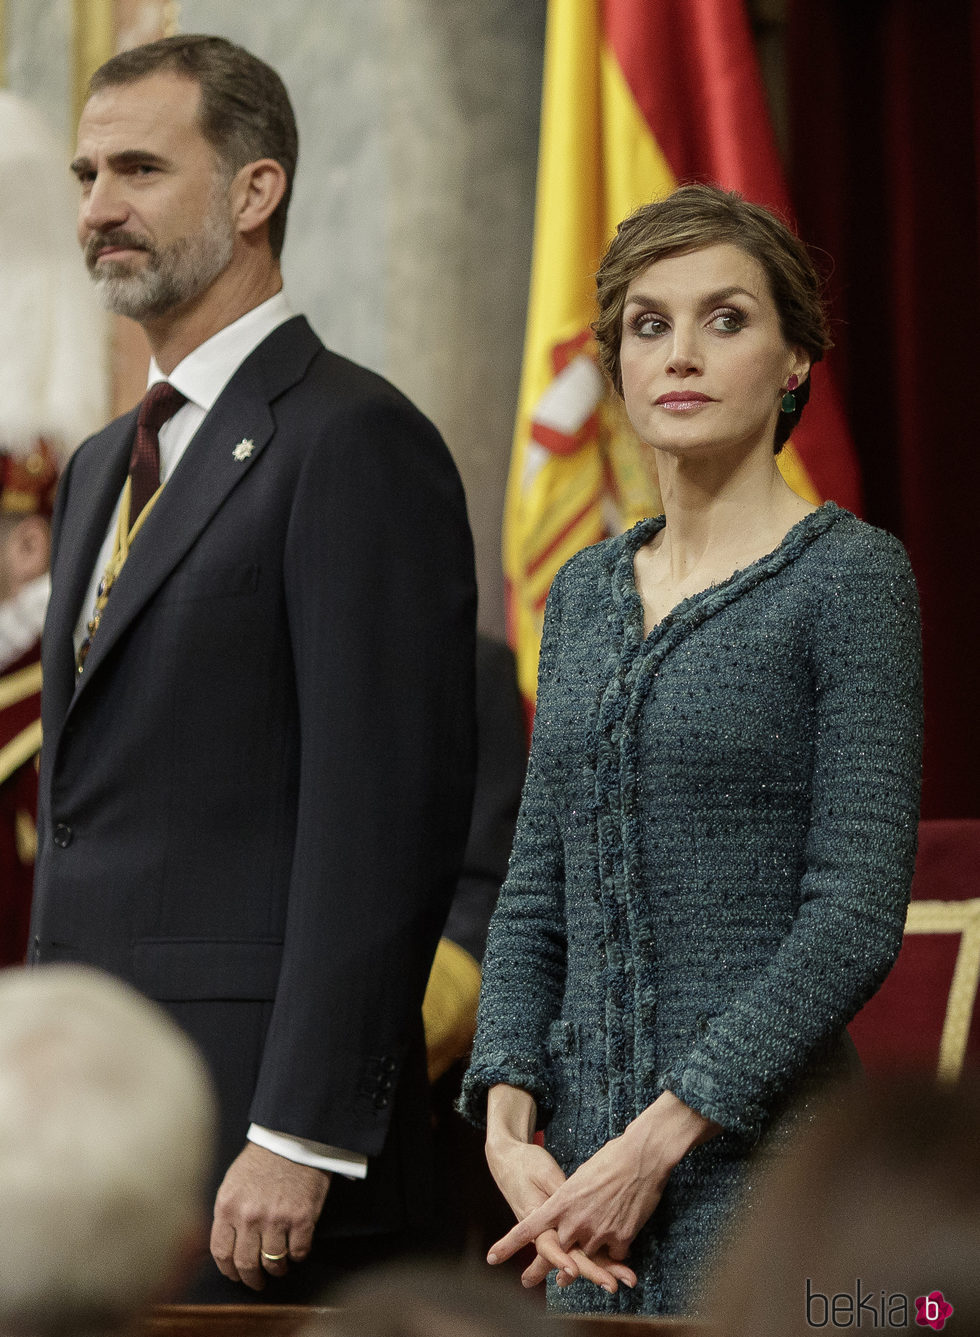 La Reina Letizia, muy seria junto al Rey Felipe VI durante la Apertura de la XII Legislatura Española